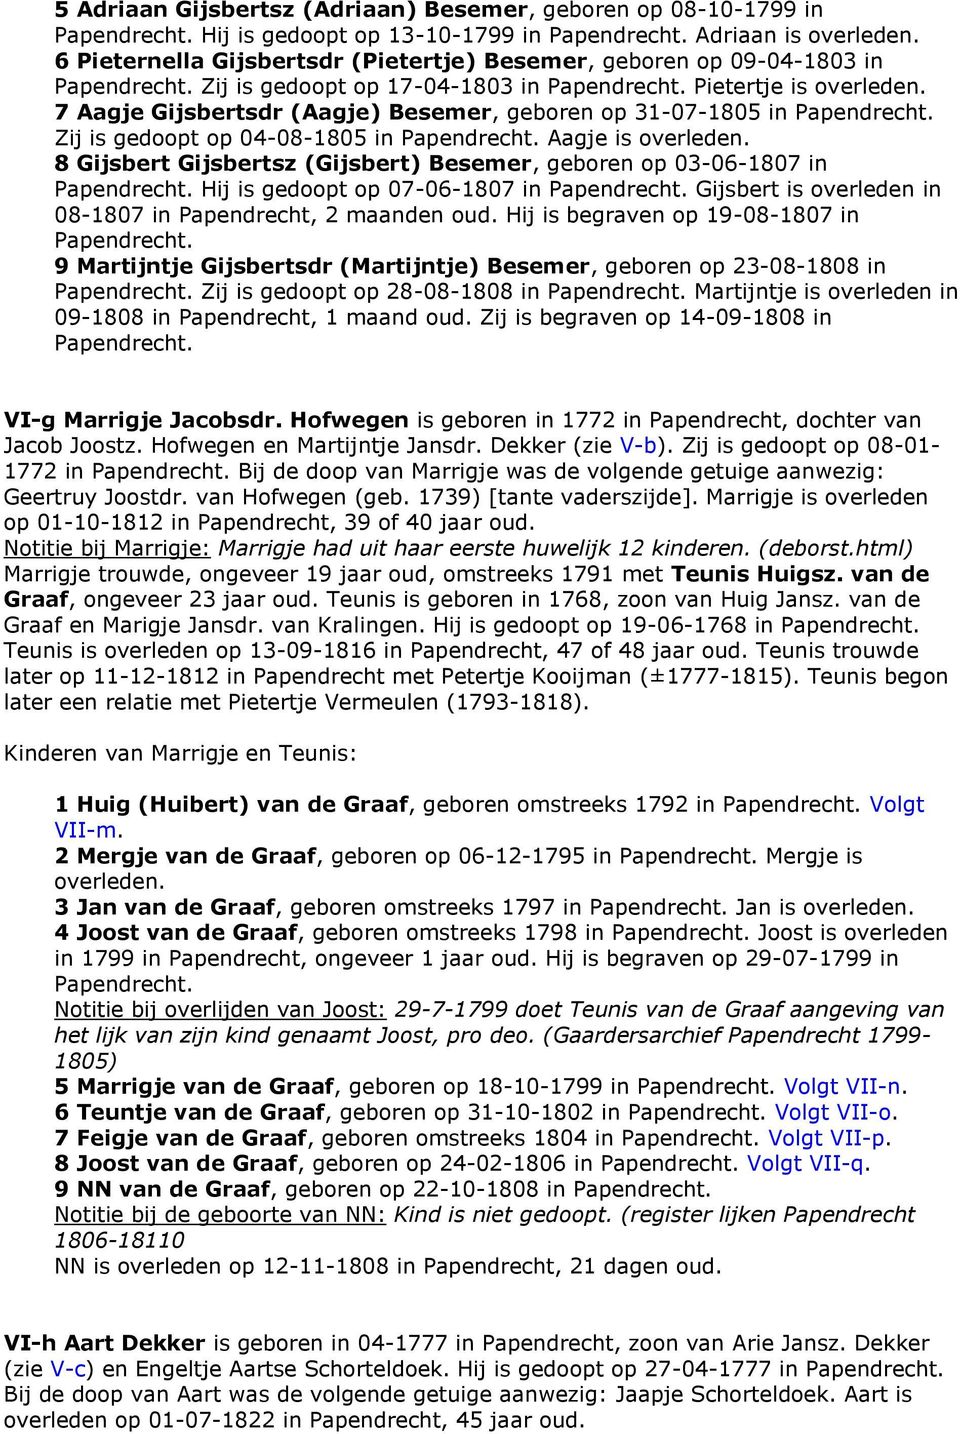 7 Aagje Gijsbertsdr (Aagje) Besemer, geboren op 31-07-1805 in Papendrecht. Zij is gedoopt op 04-08-1805 in Papendrecht. Aagje is overleden.